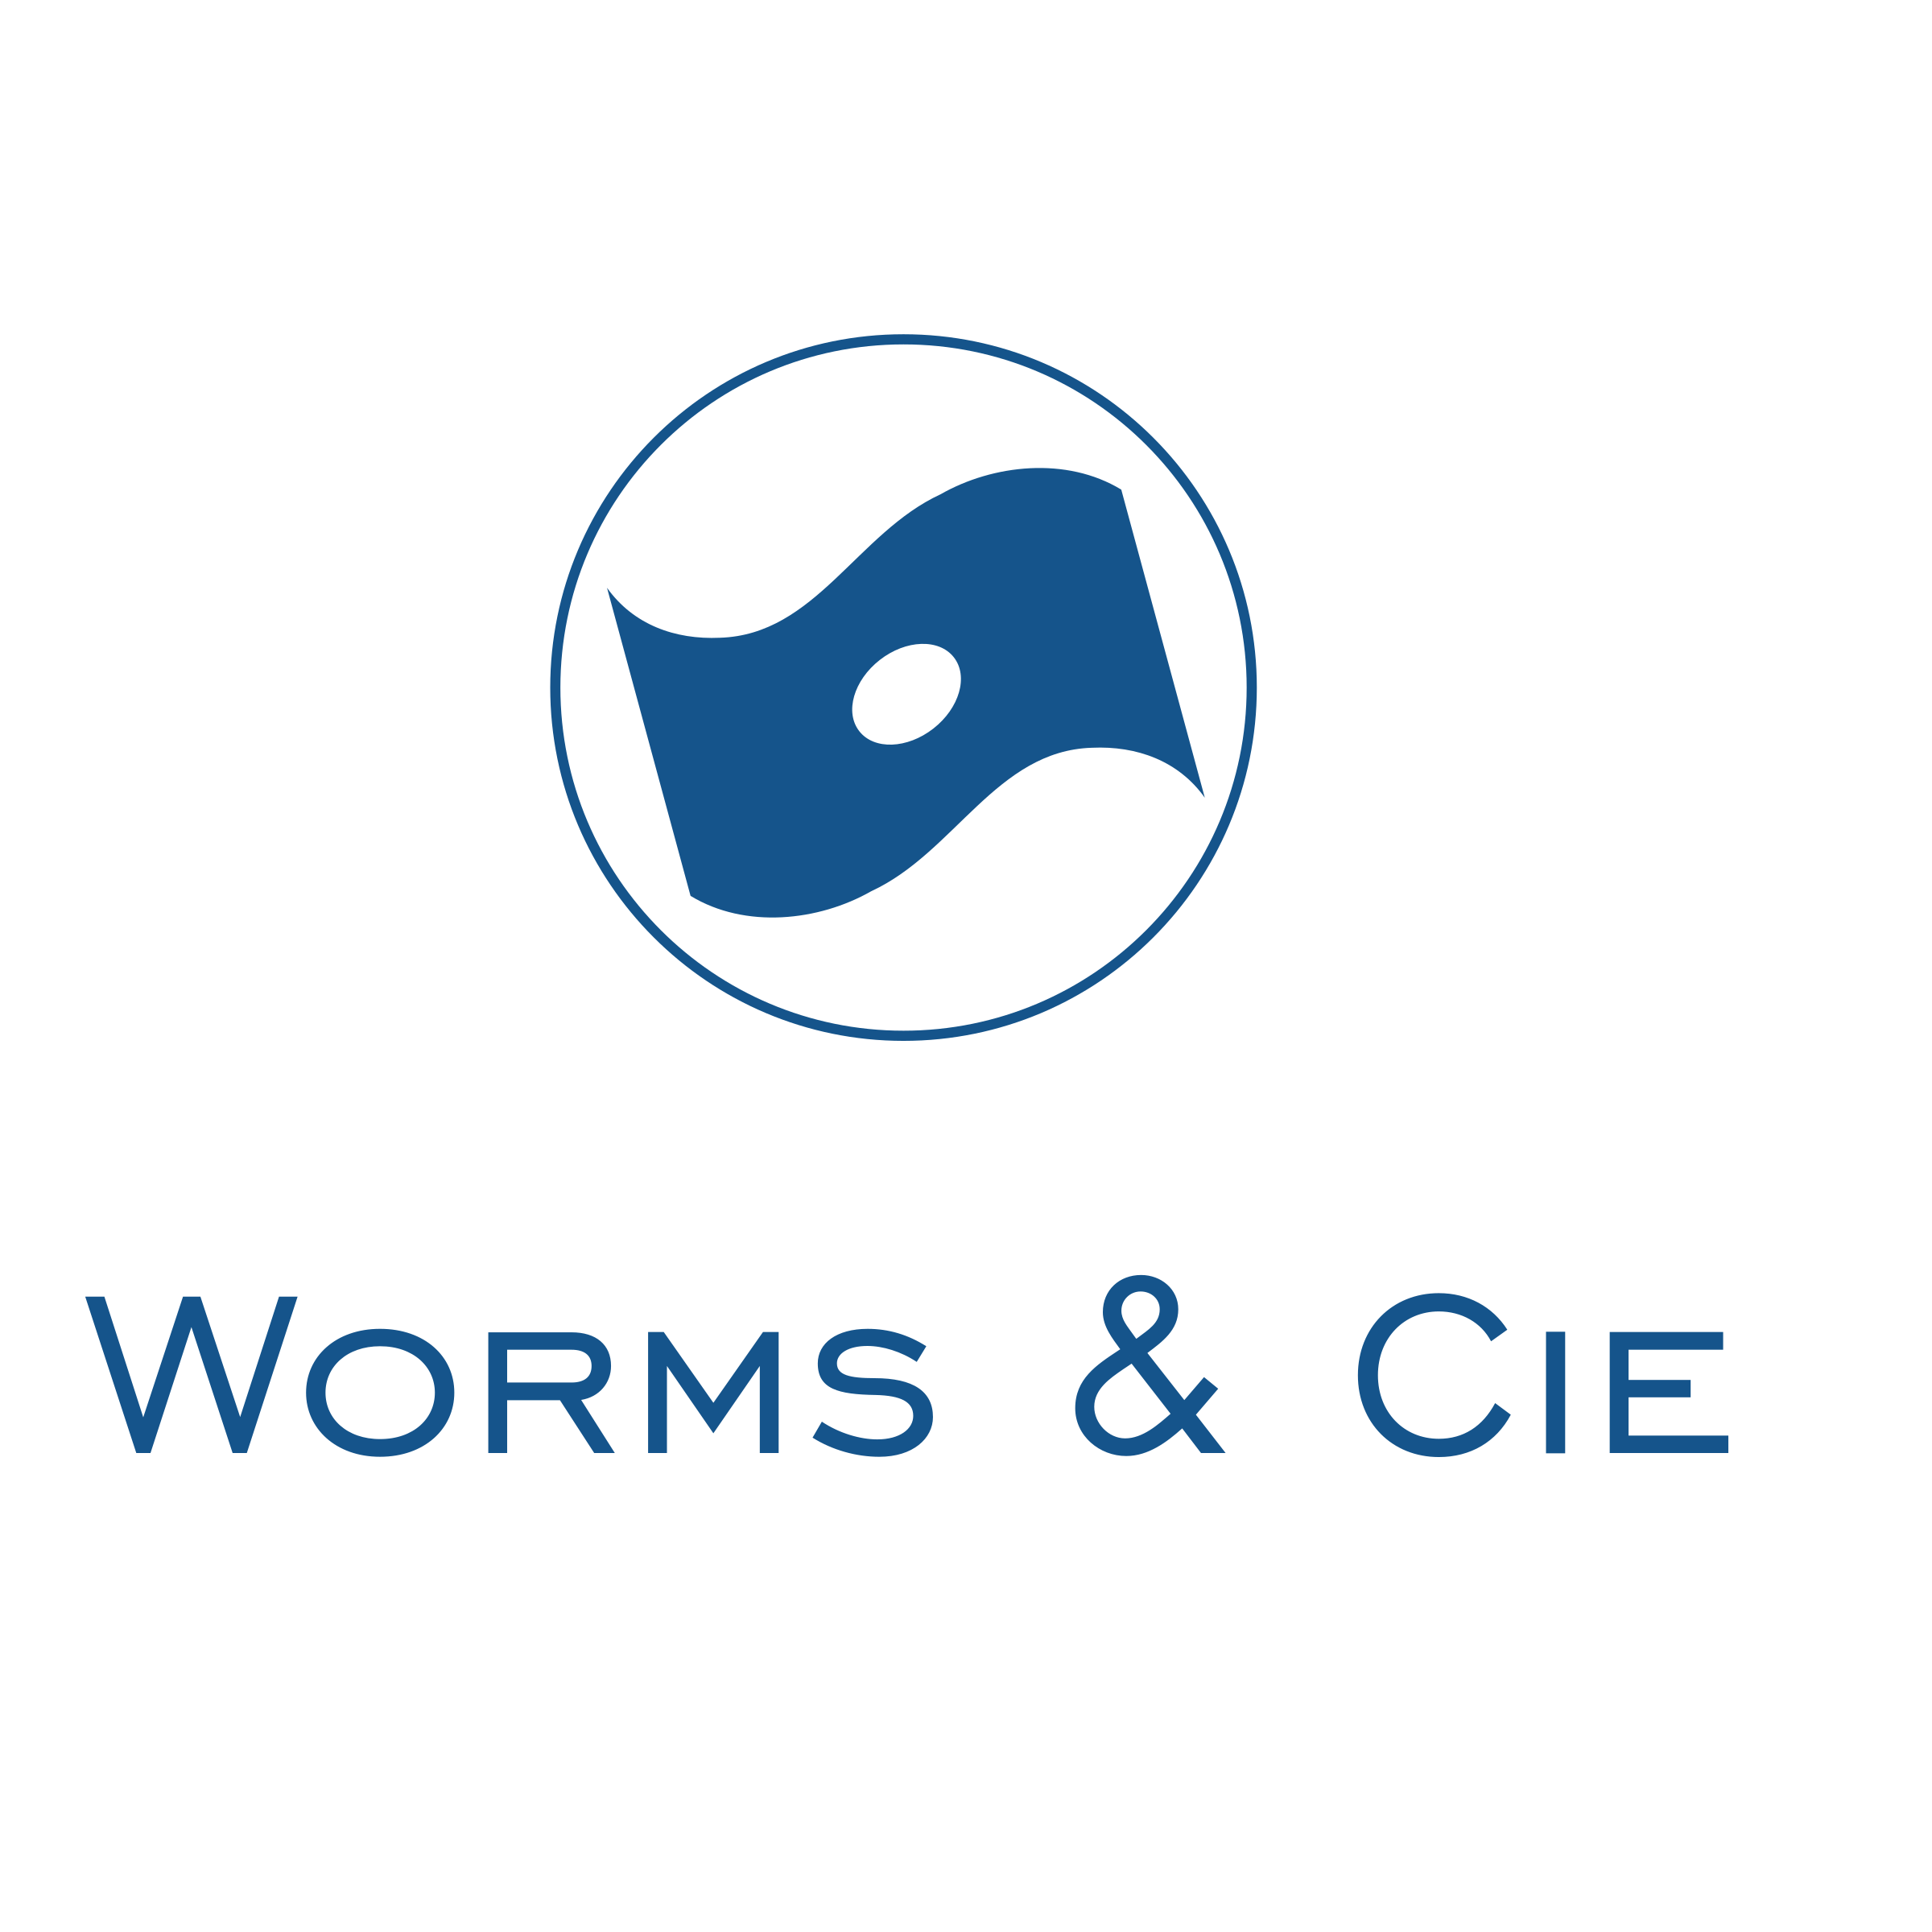 CIE Logo - Worms & Cie Logo PNG Transparent & SVG Vector